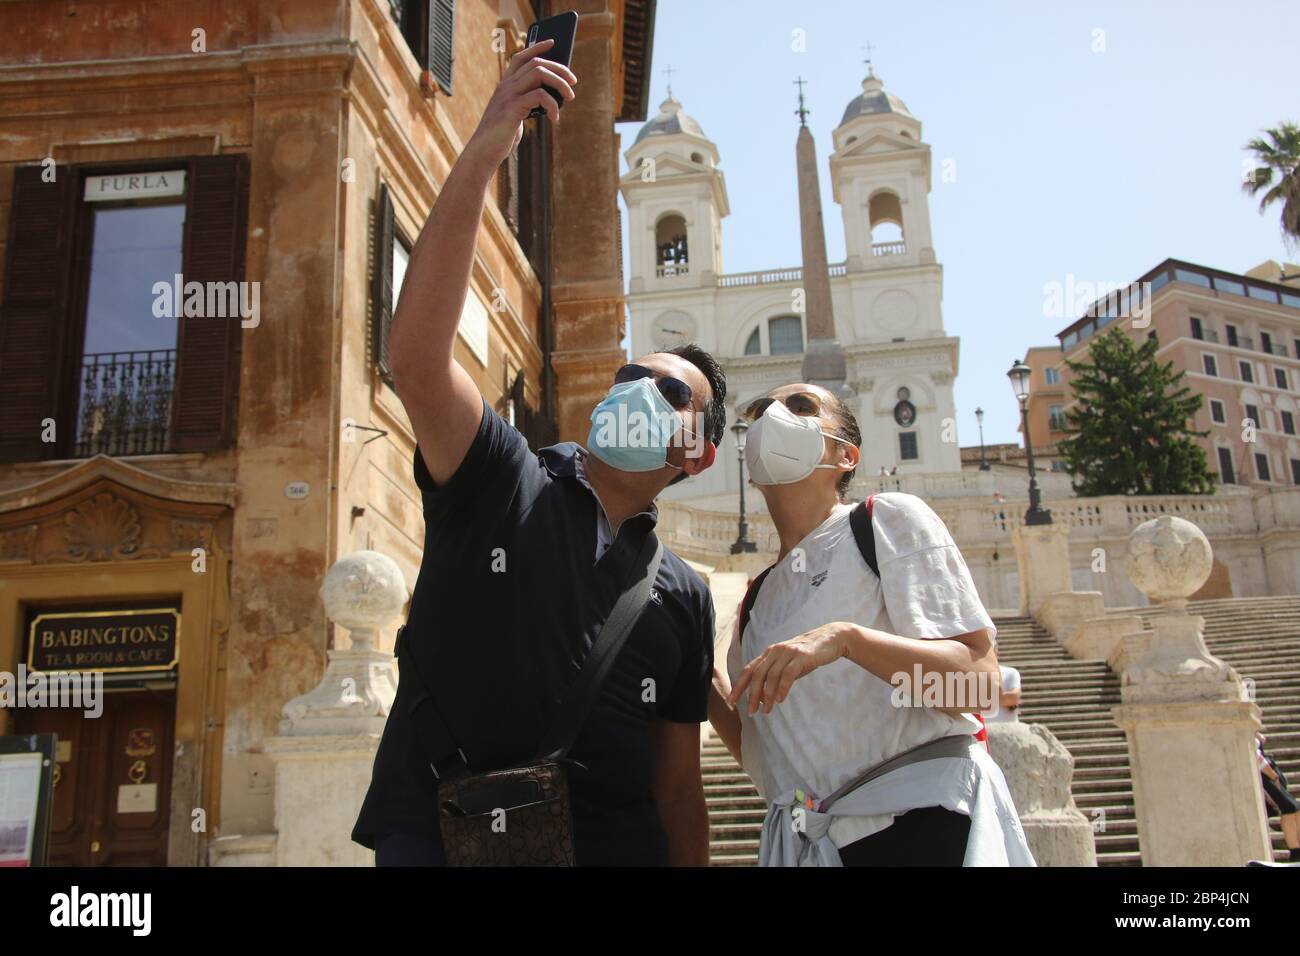 Roma, Italia, 17 maggio 2020: Una coppia di turisti si scatta un selfie in piazza di Spagna a Roma, nell'ultimo giorno di lockdown dopo quasi 3 mesi di quarantena per causa della pandemia Covid-19. Stock Photo